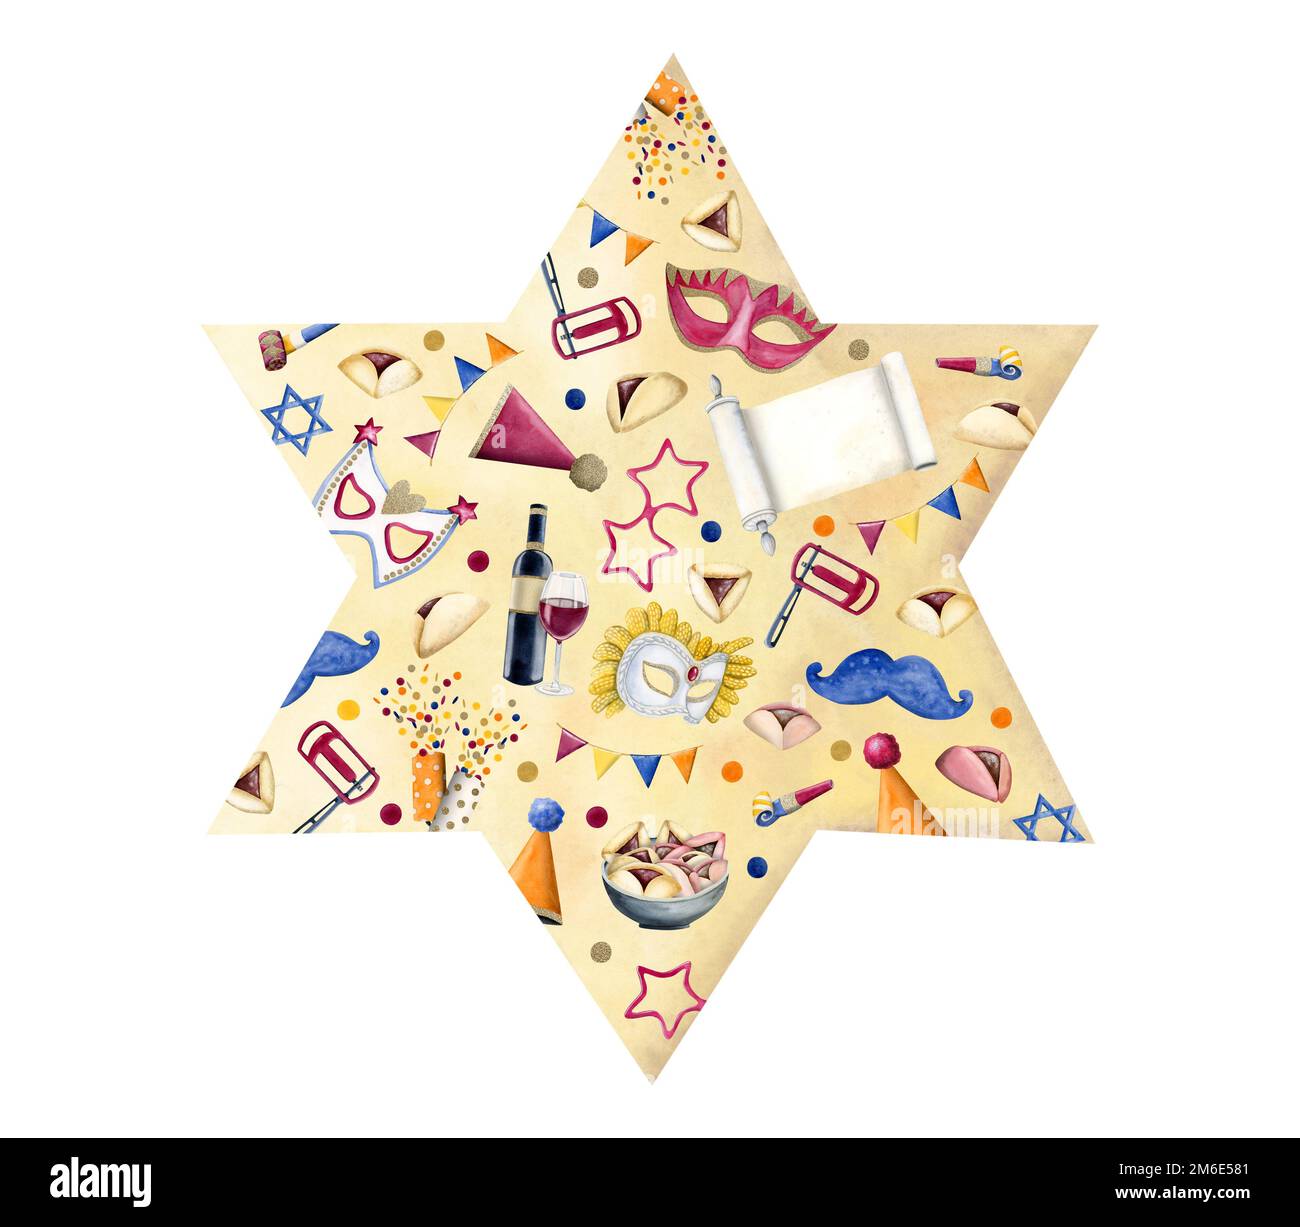 Étoile juive de David avec symboles de vacances Purim, masques d'aquarelle, scroll Esther, chapeaux de fête, boutons-pression, confetti, biscuits, raashan sur fond jaune Banque D'Images